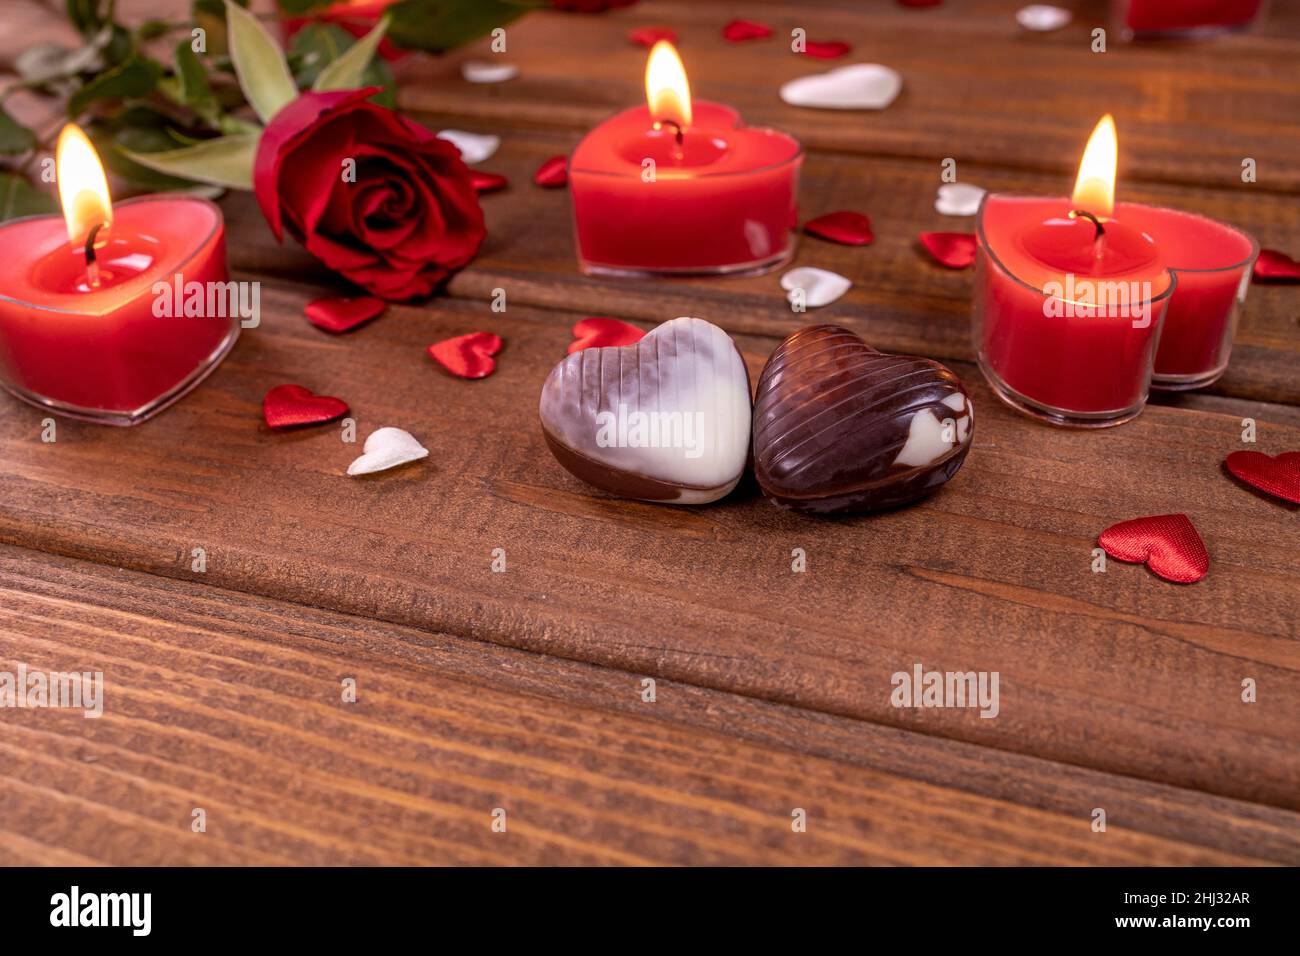 Día de San Valentín de chocolate dulces en forma de corazón y rosas rojas con velas en madera. Concepto de amor y romance. Foto de stock